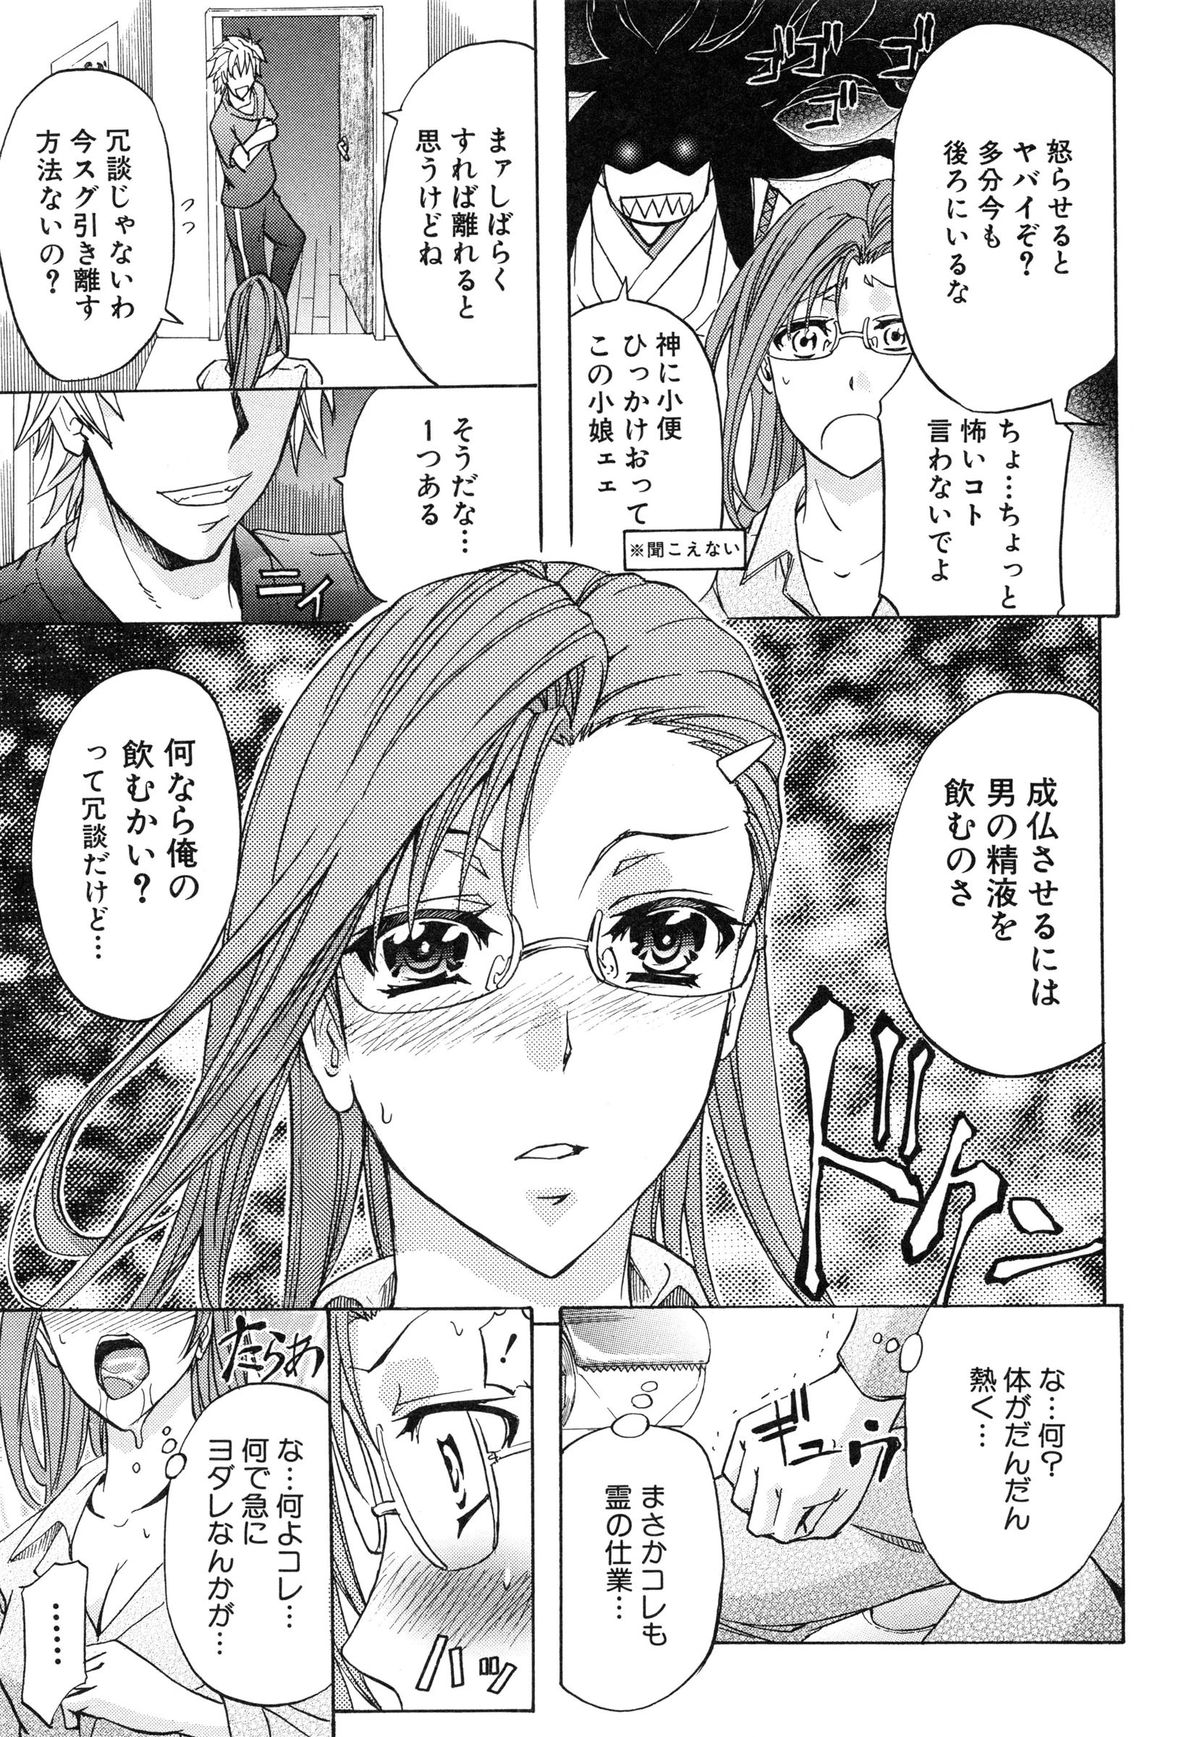 [Kikuichi Monji] W-C Water Closet page 16 full